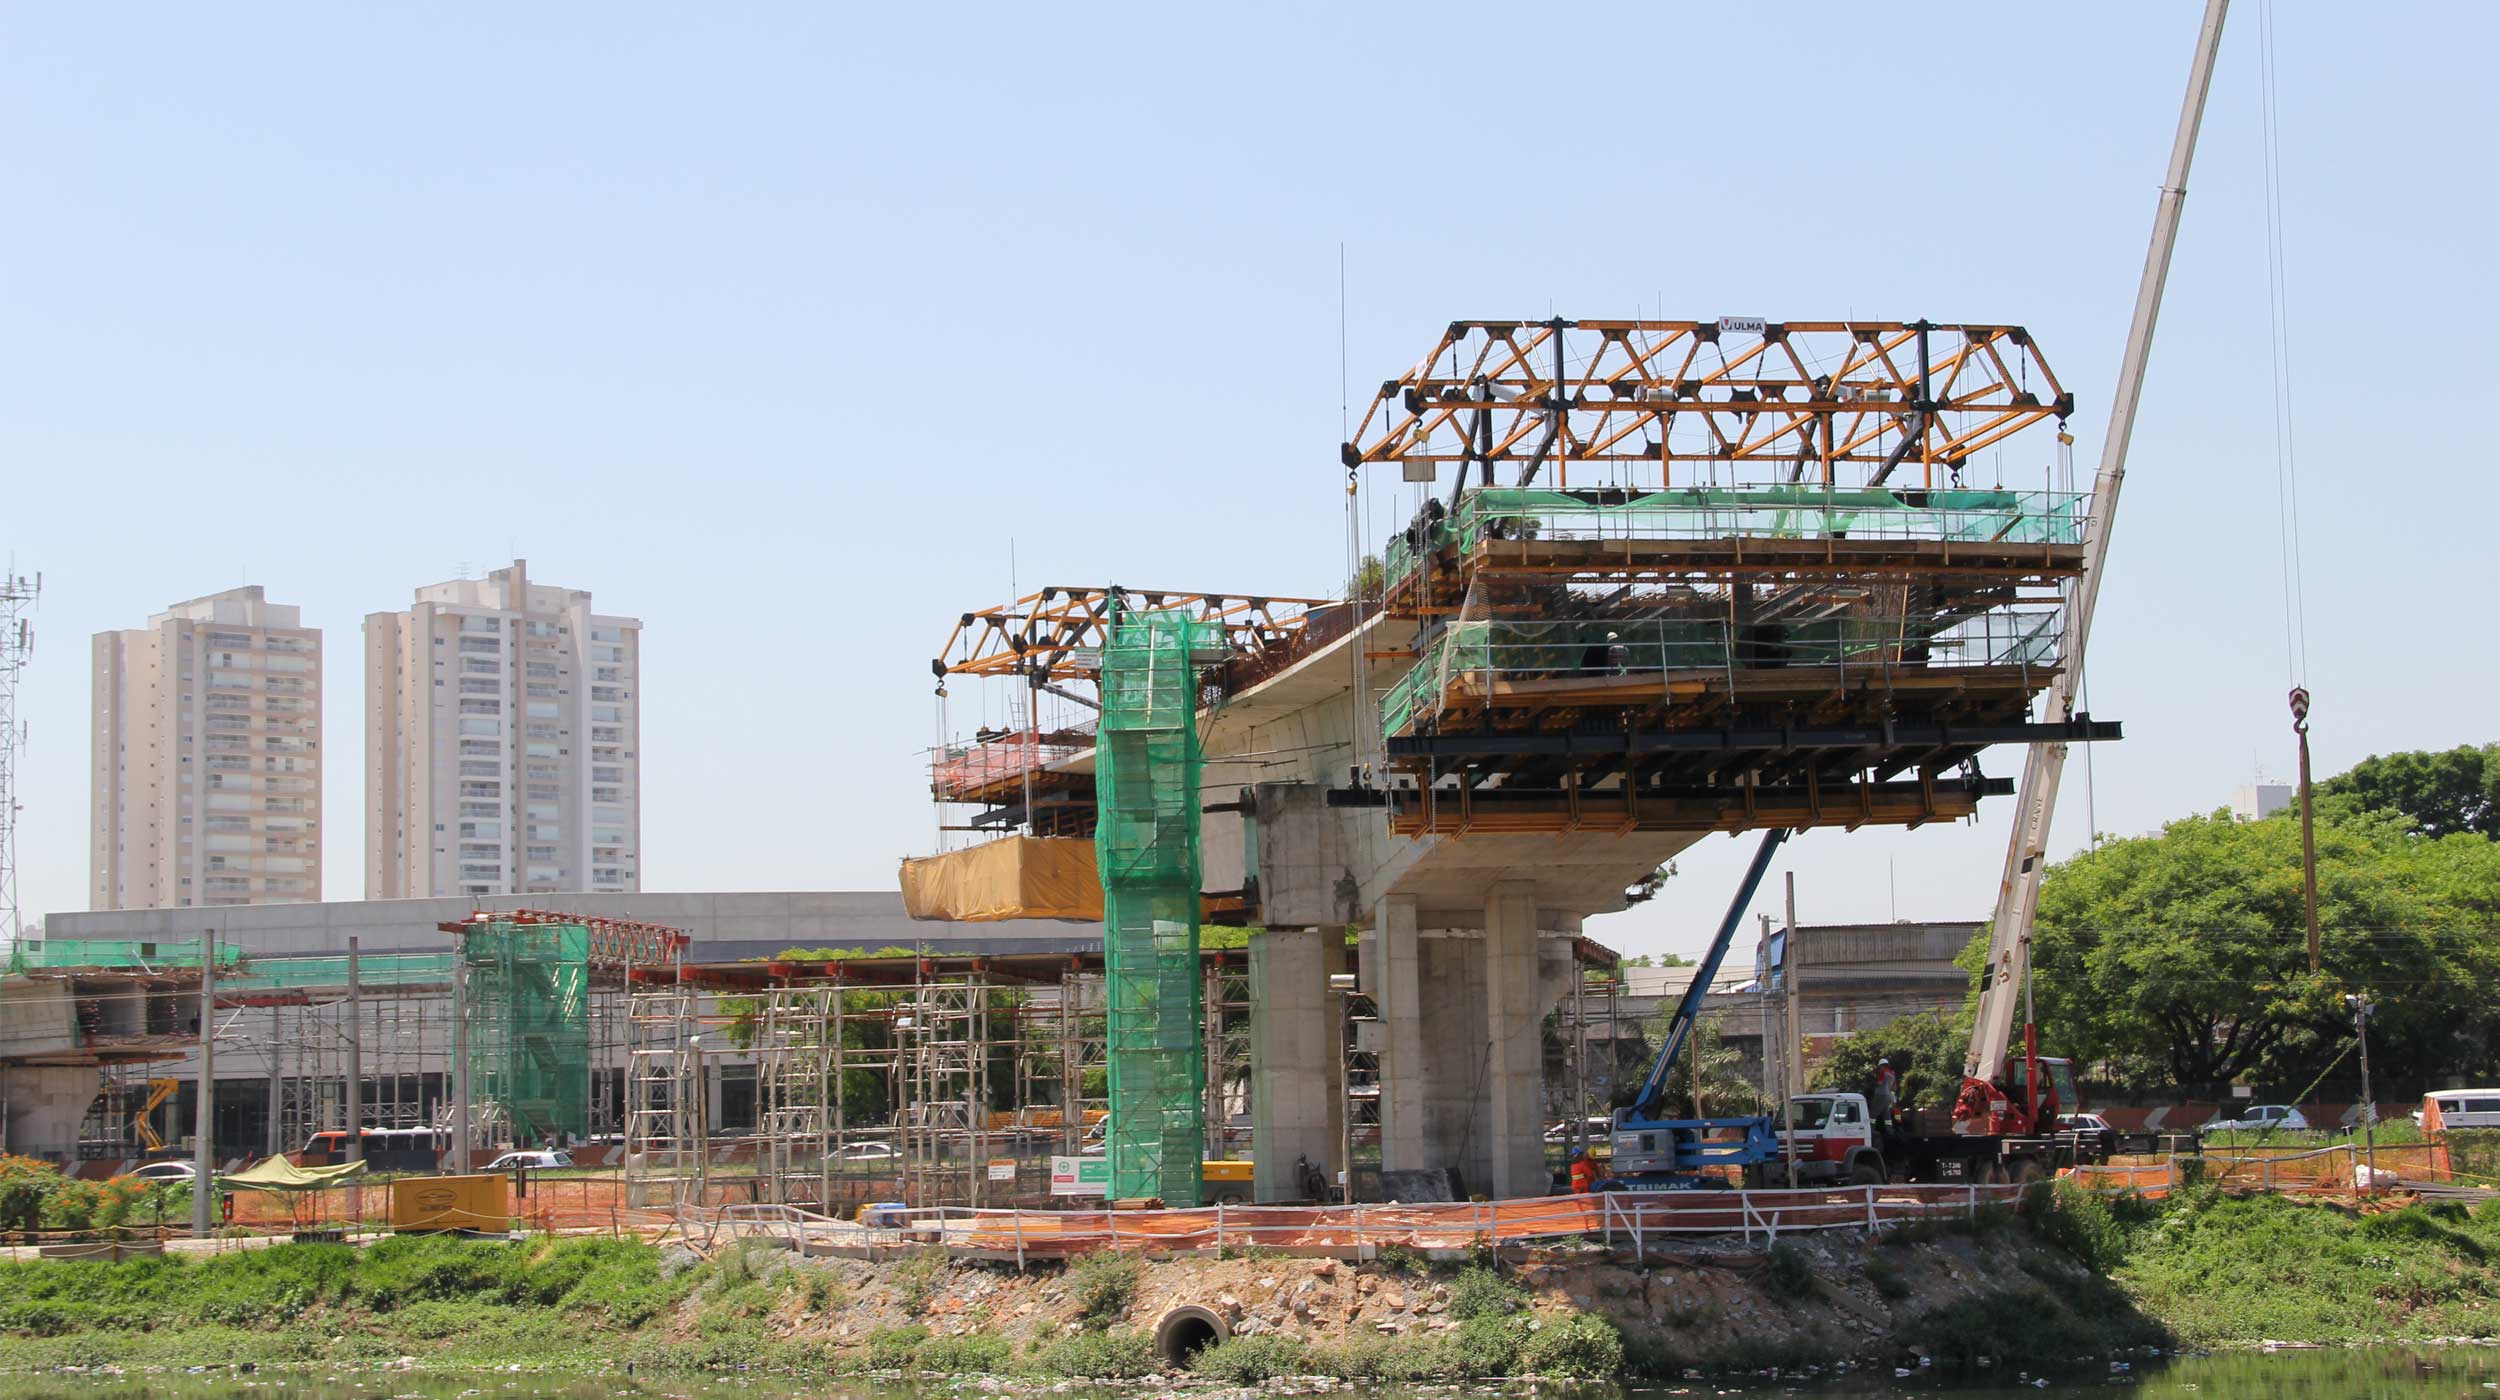 El puente Itapaiuna es un paso elevado de 340 m de longitud  y 3 carriles que aliviará el tráfico en las nuevas zonas residenciales.